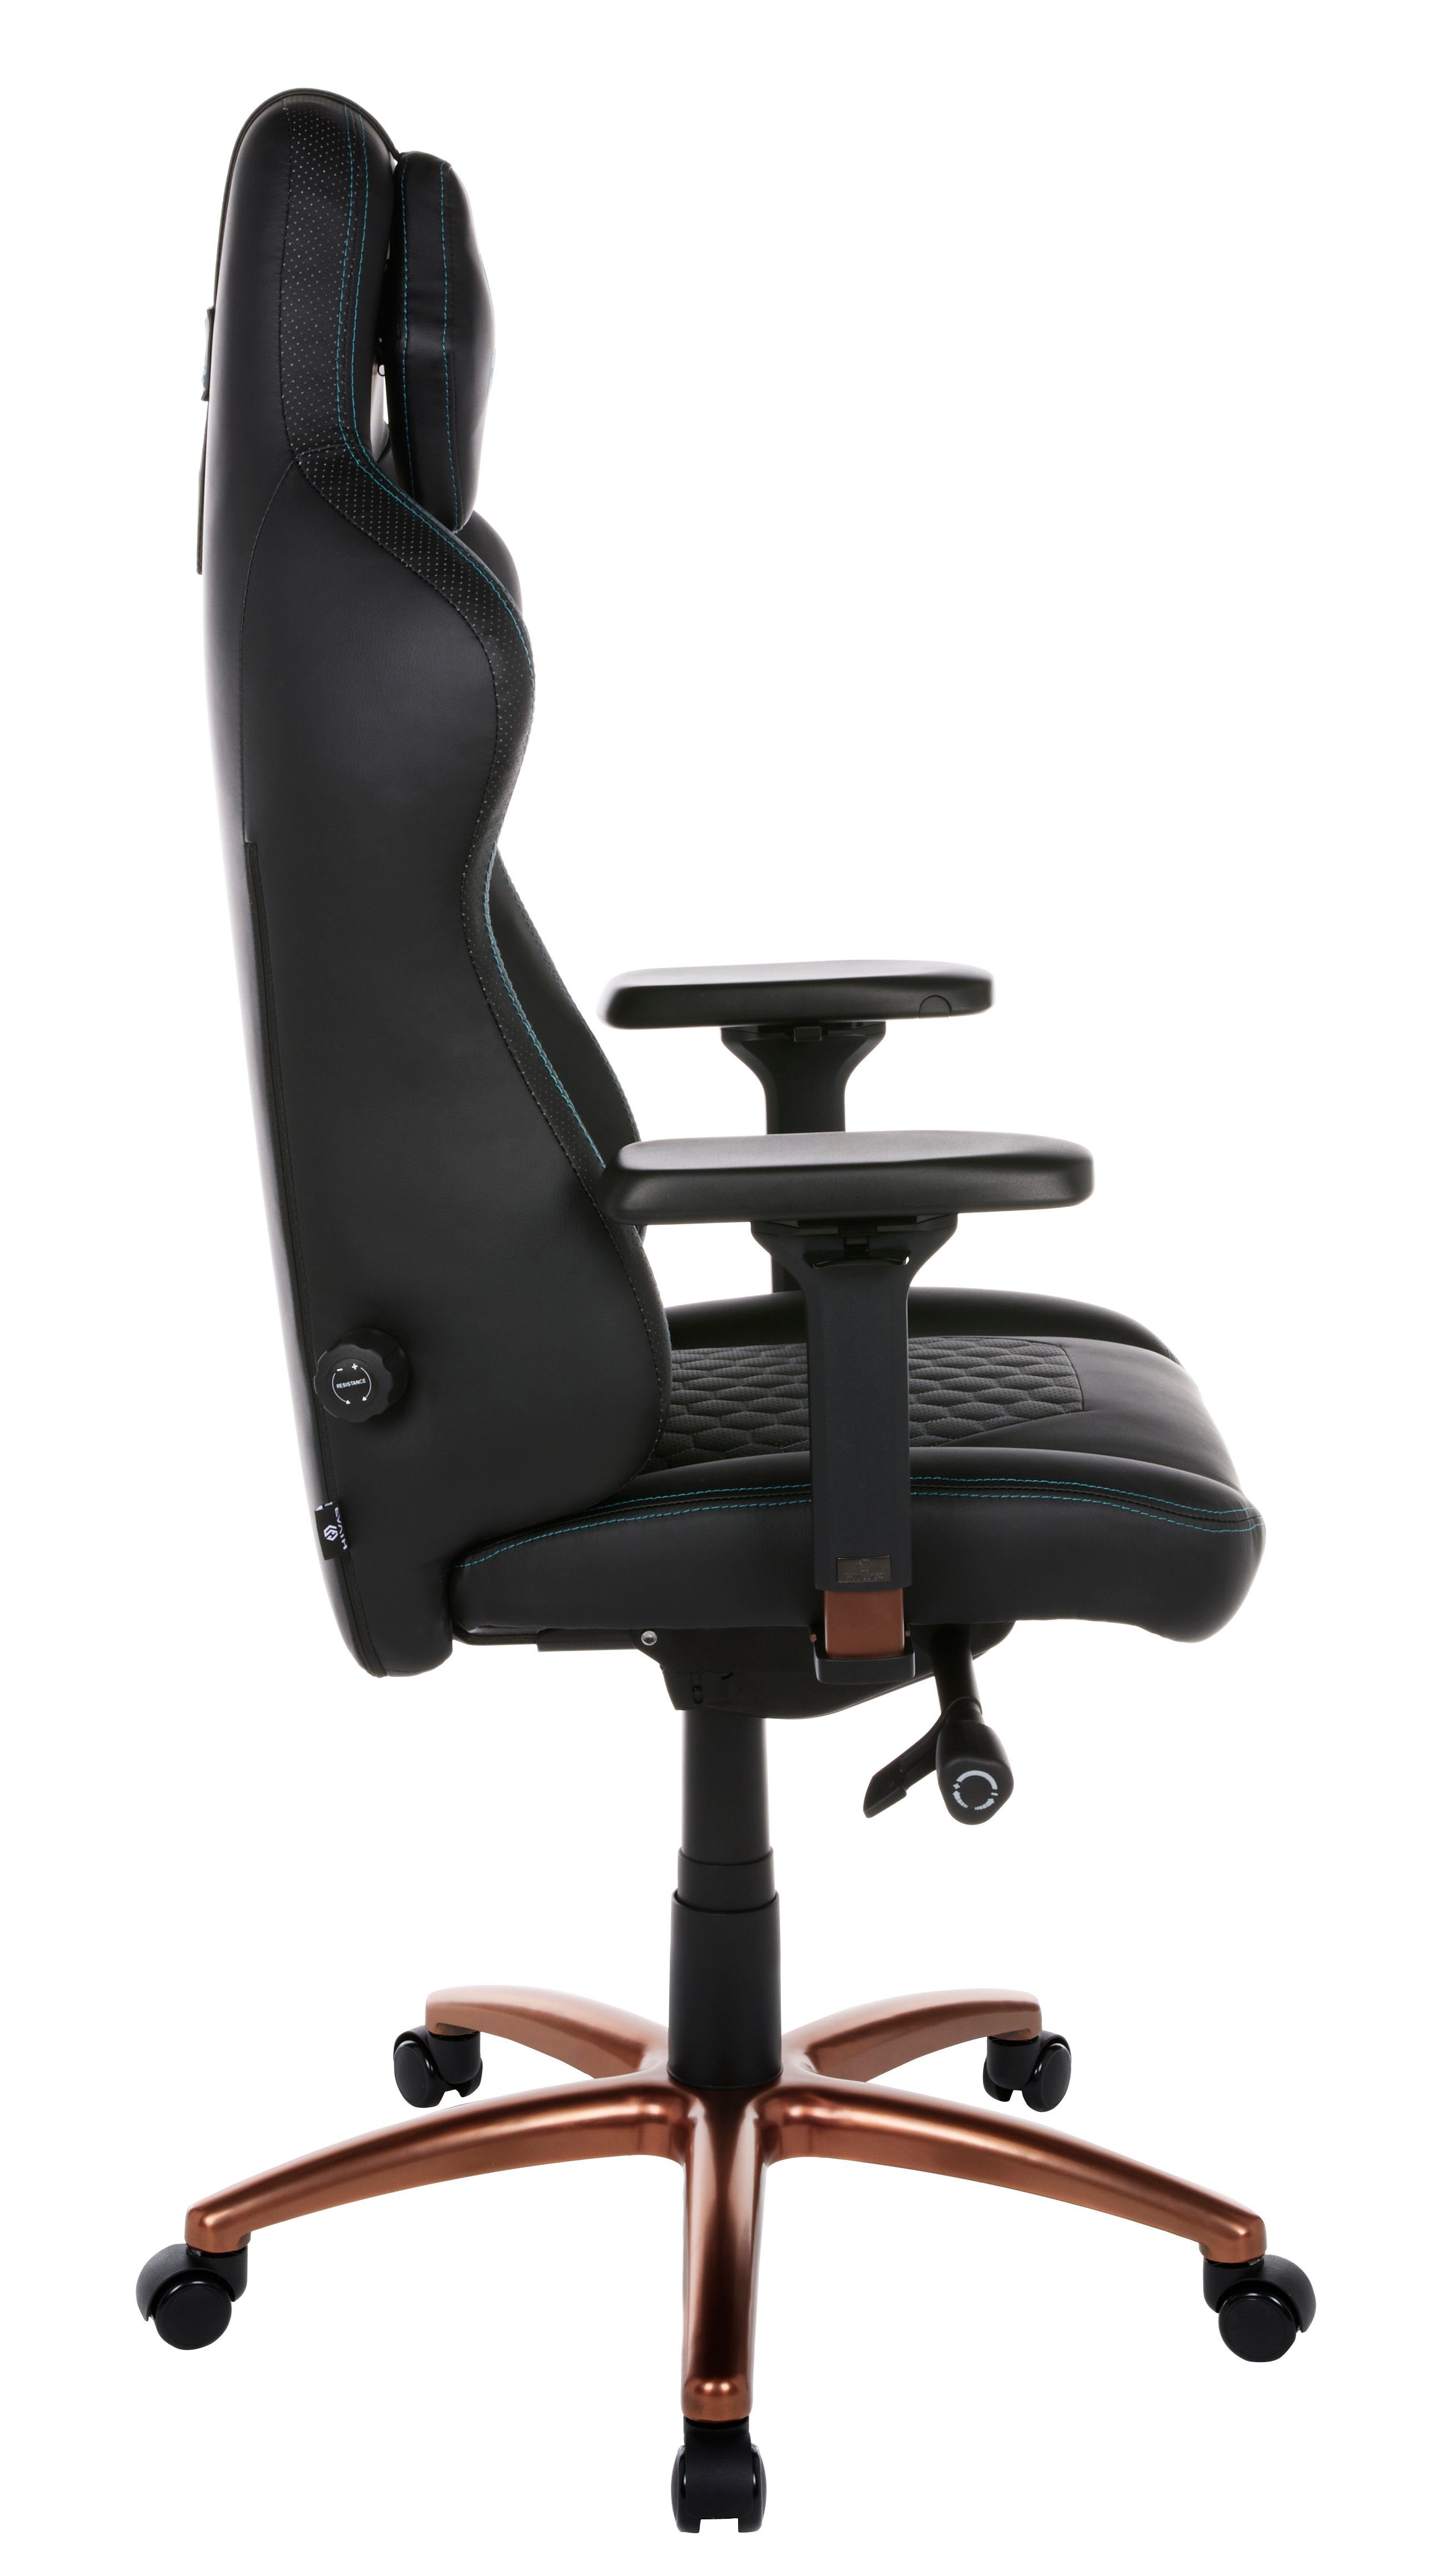 HIVAR Gaming-Stuhl ORBICAL Fußkreuz: Belastbarkeit Armlehnen, TÜV Lordosenstütze, Synchronmechanik, geprüft, Copper höhenverstellbare Sitztiefenverstellung, kg Rückenlehne, 130 4D Wippwiderstand, ONYX